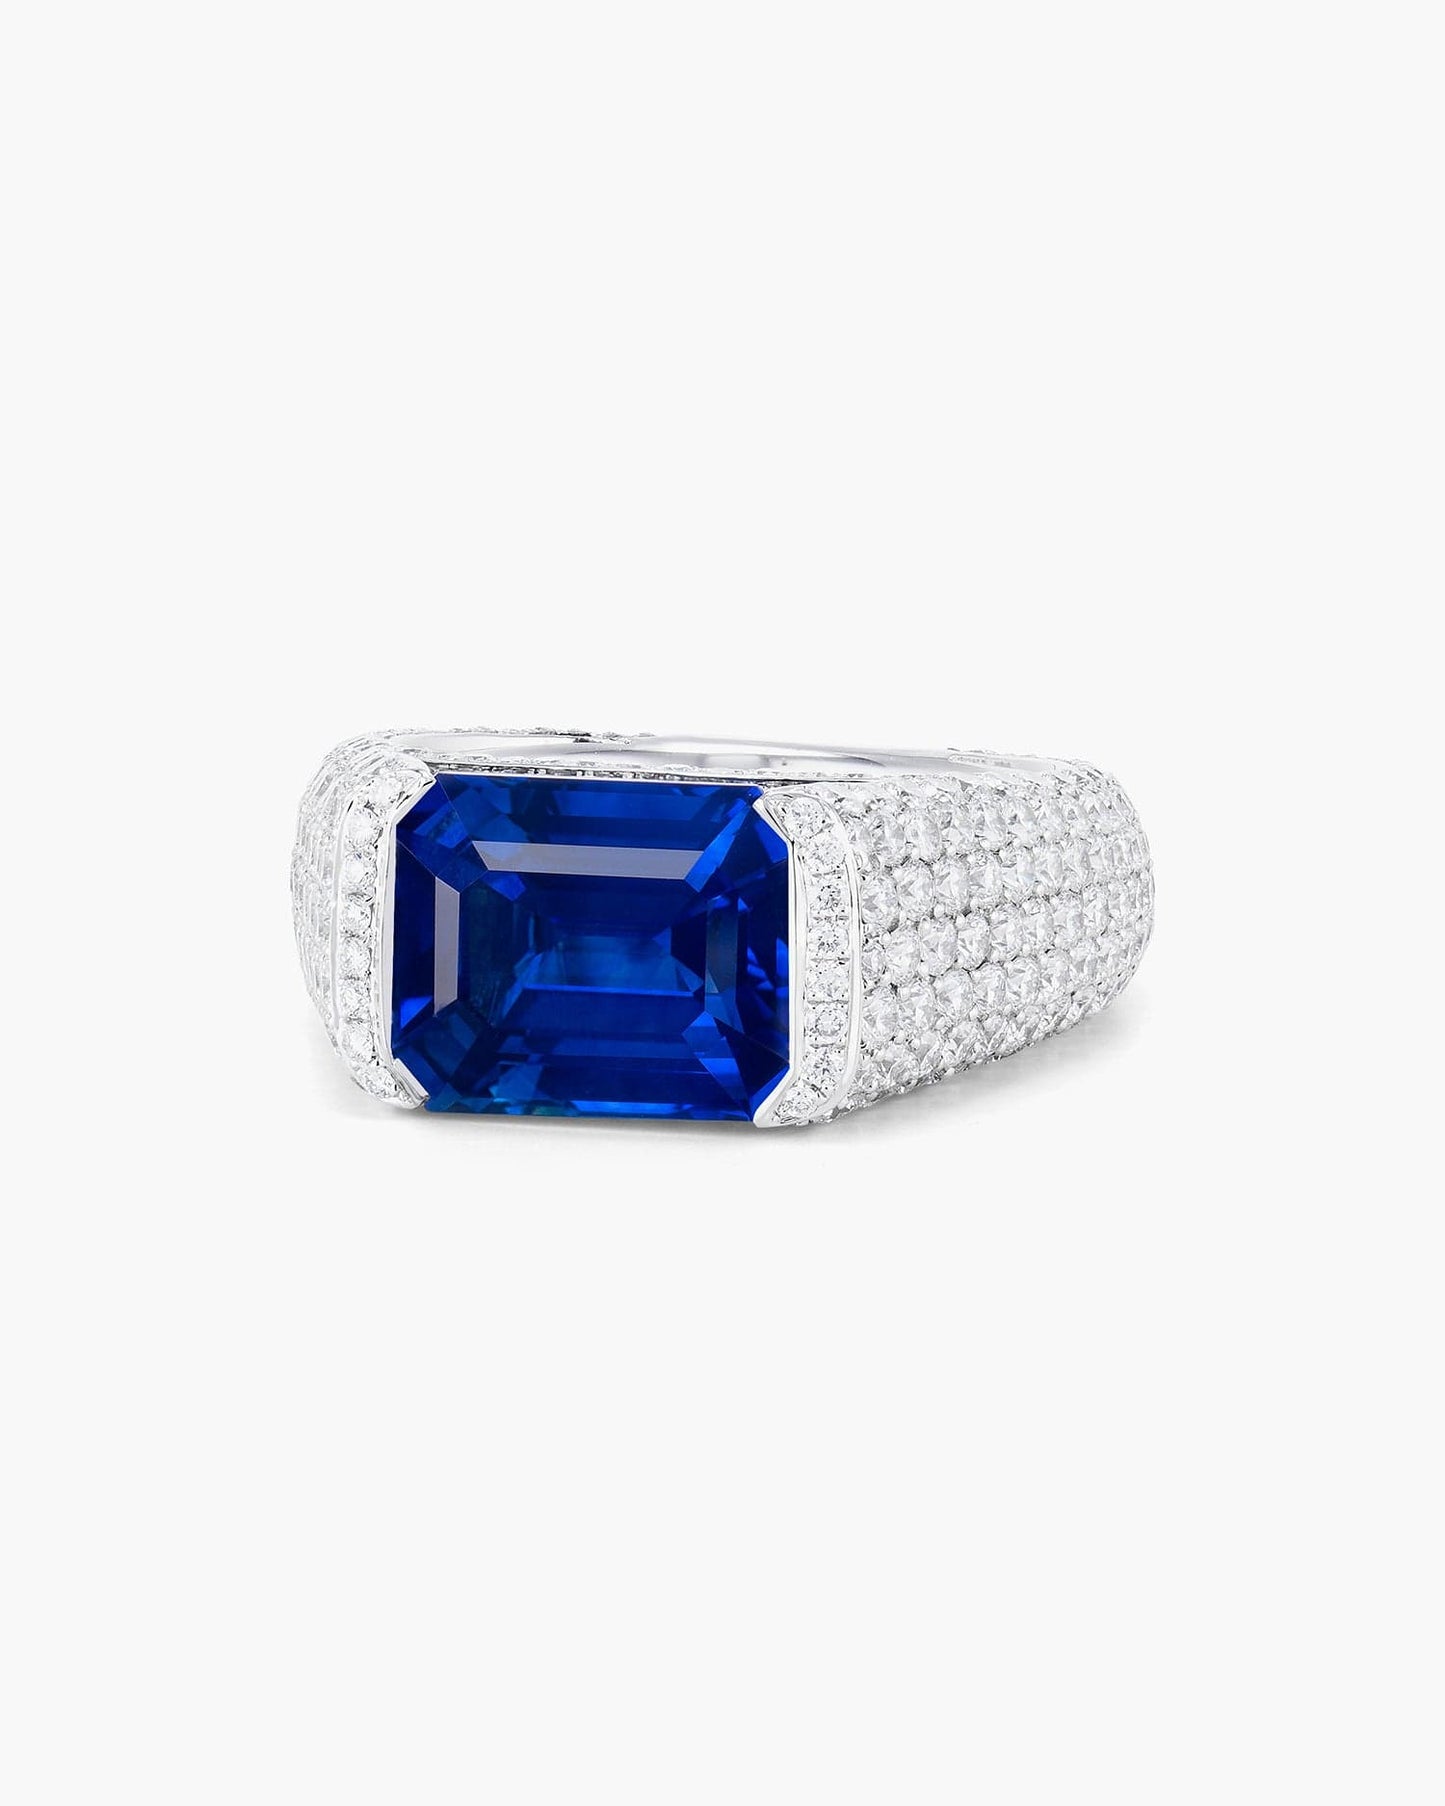 6.38 carat Emerald Cut Ceylon Sapphire and Diamond Ring